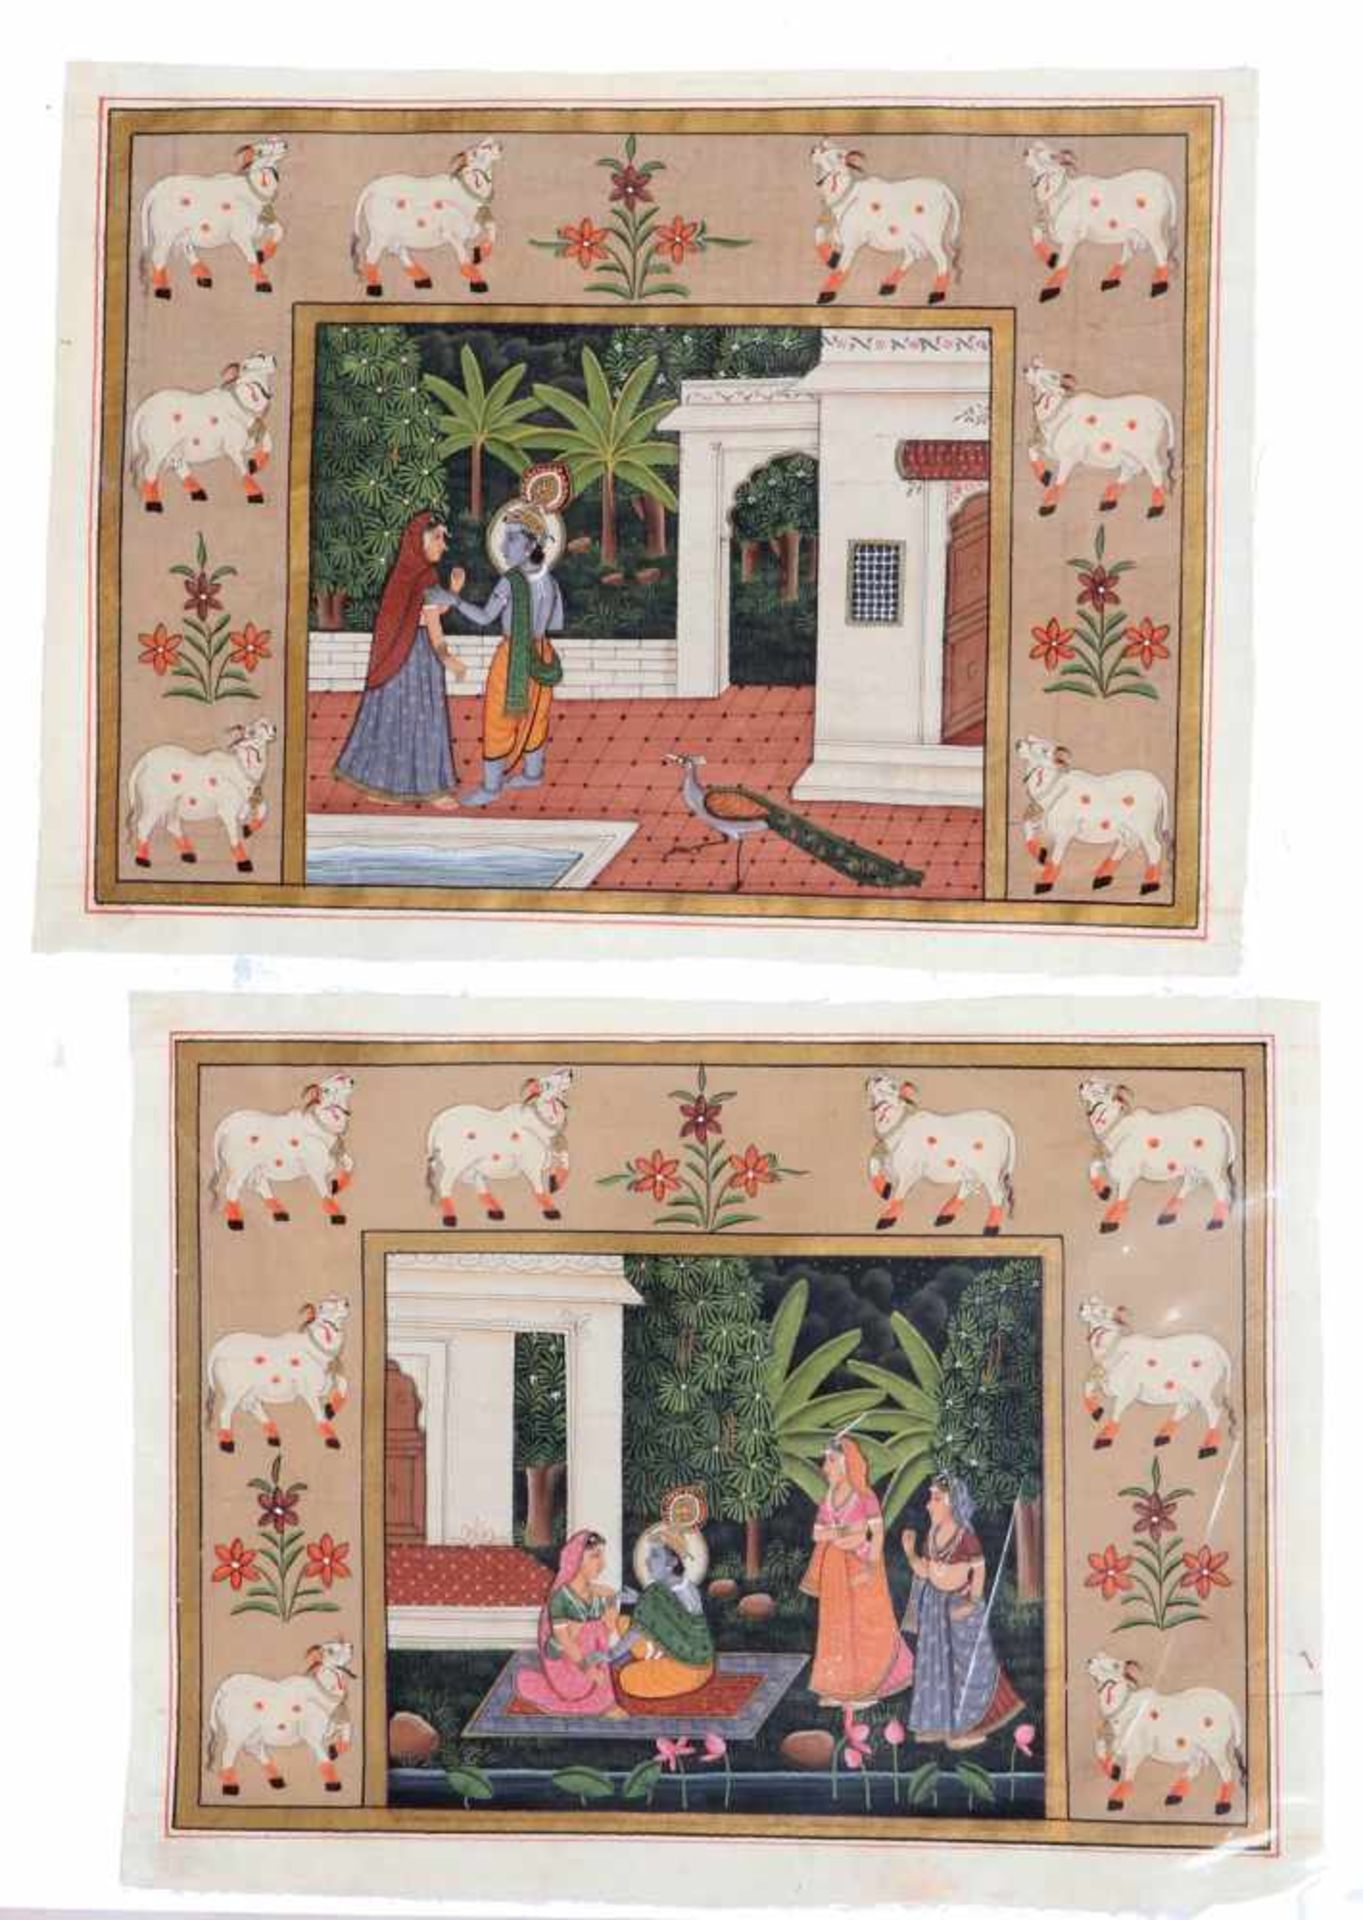 2 Kleine SeidenbilderA + b 2 kleine Seidenbilder aus Indien, 20. Jahrhundert, je ca. 20 x 30 cm.